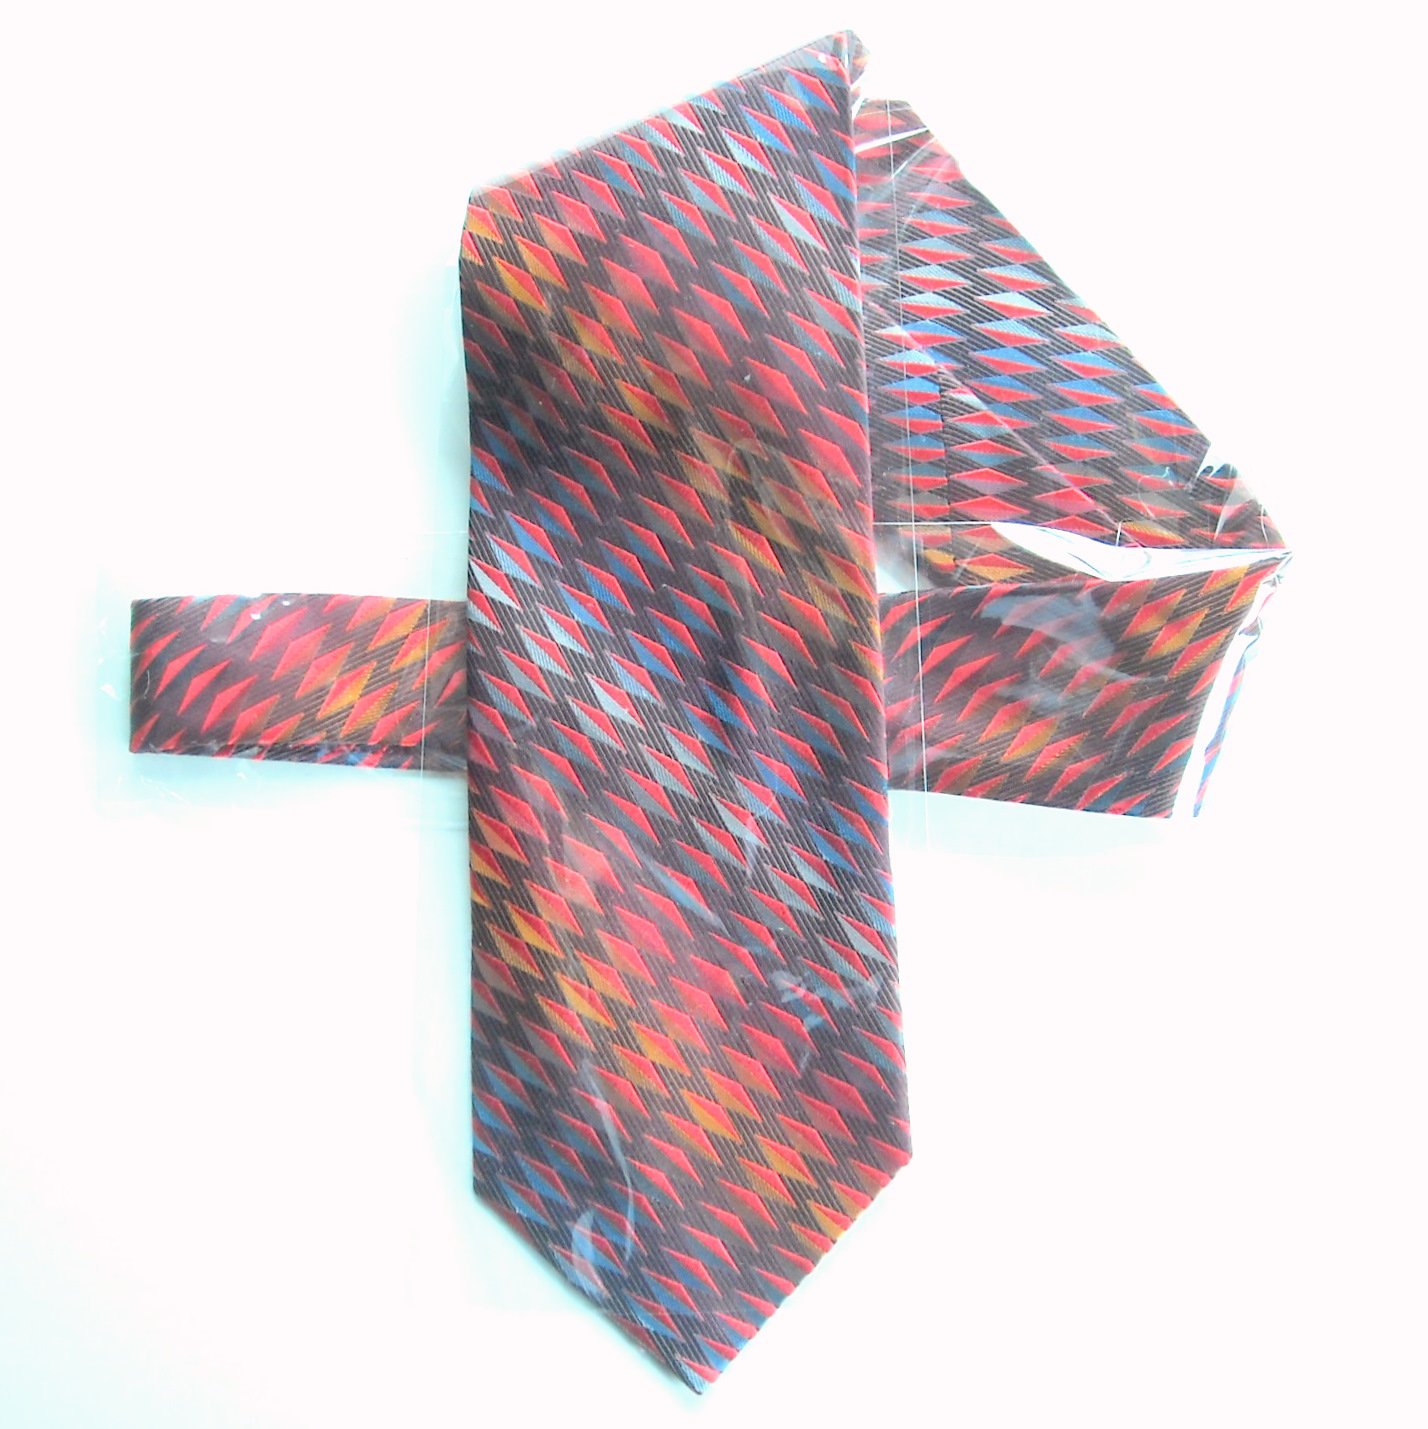 Brass Colored with Medallion Pattern Vintage Necktie Necktie Vintage Meeting Street Tie Silk Tie Hand Made Vintage Men/'s Tie